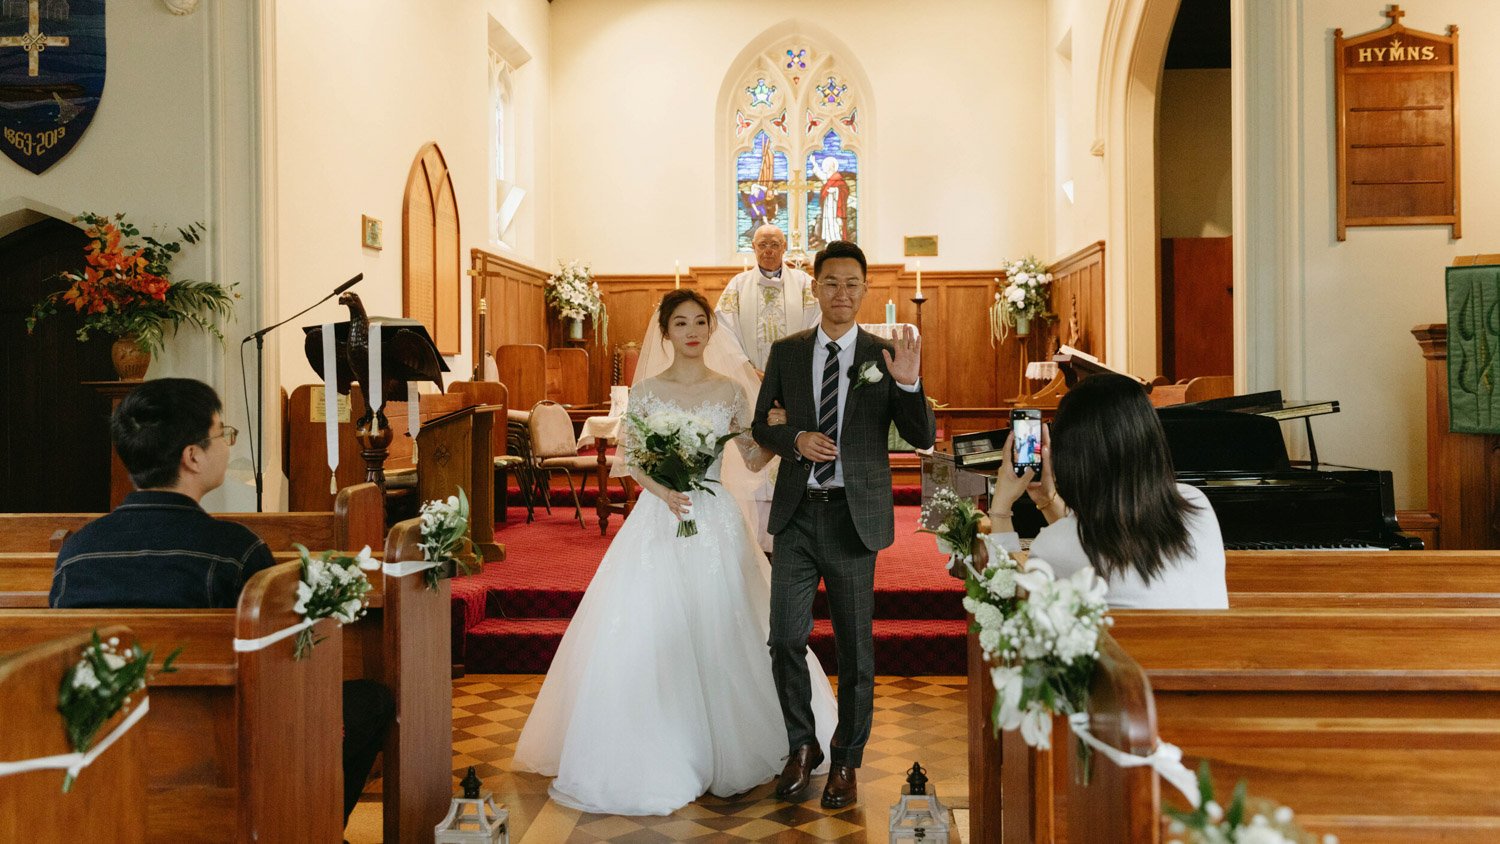 Queenstownn St Peter's Anglican Church wedding elopement photographer Panda Bay Films-23.jpg